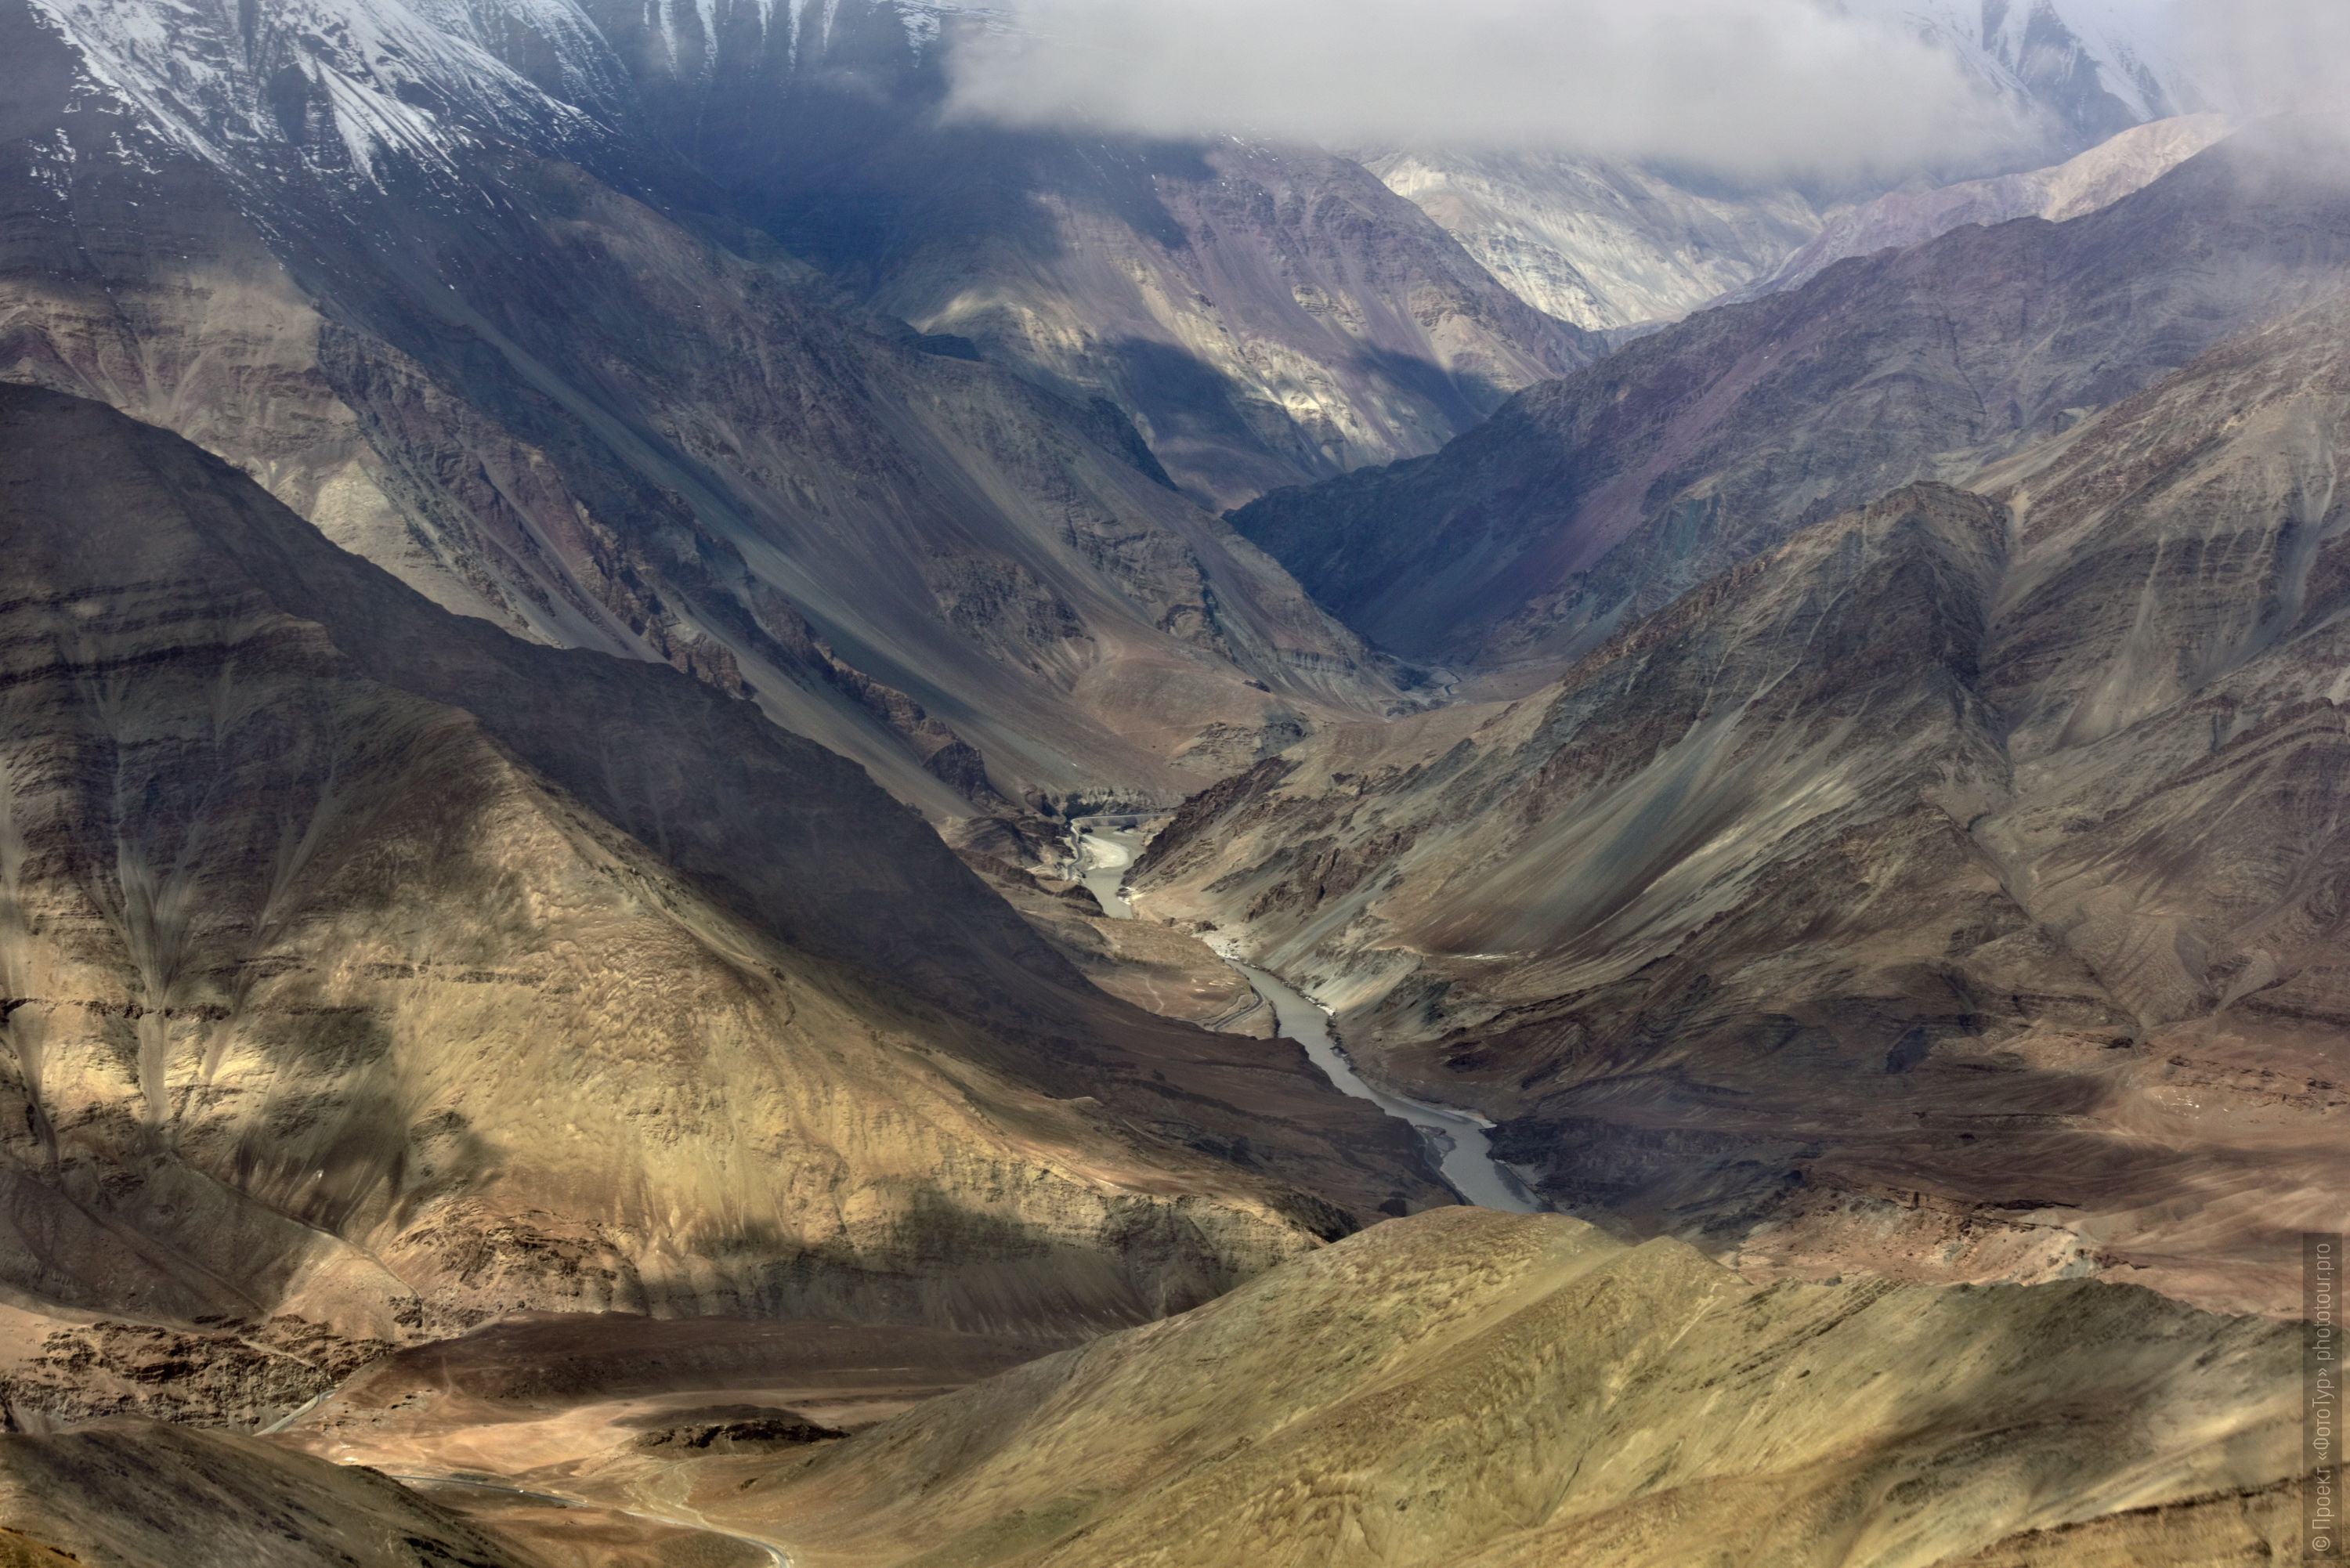 Indus River Valley in the Leh area. Budget photo tour Legends of Tibet: Zanskar, September 15 - September 26, 2021.